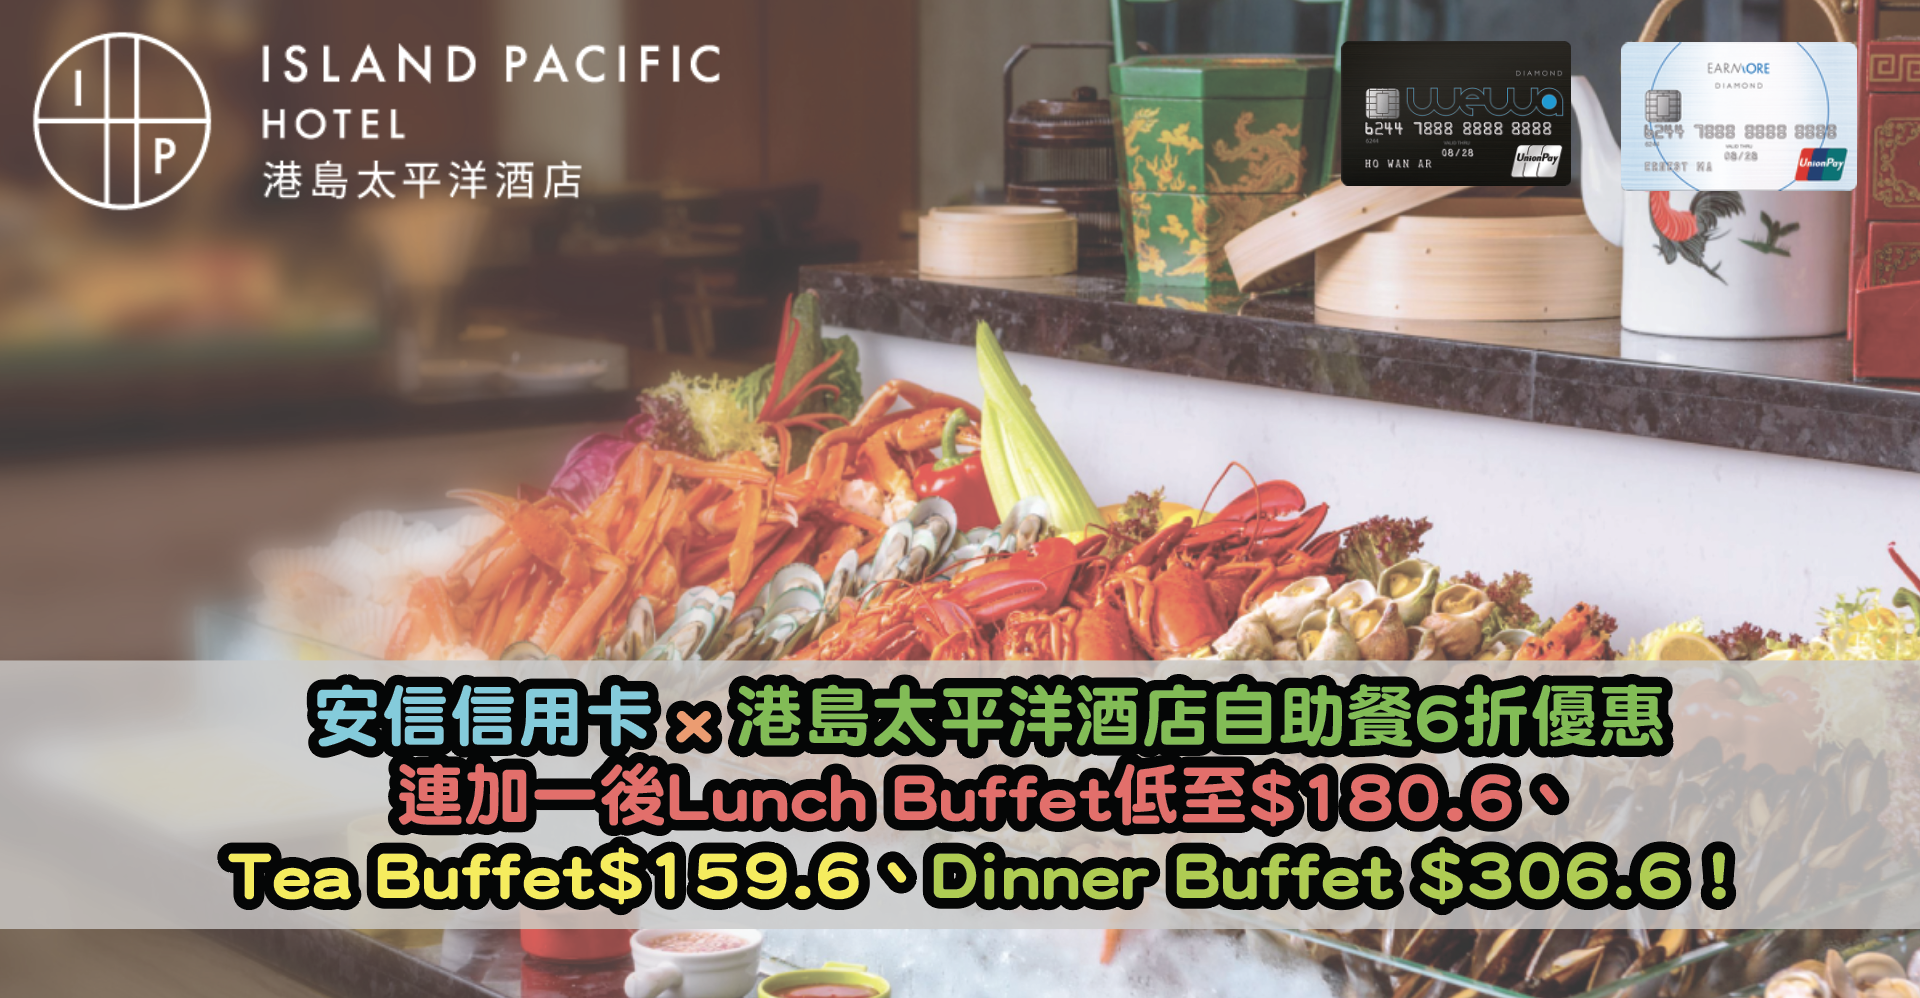 超抵！安信信用卡 x 港島太平洋酒店自助餐6折優惠！連加一後Lunch Buffet低至$180.6、Tea Buffet$159.6、Dinner Buffet $306.6！